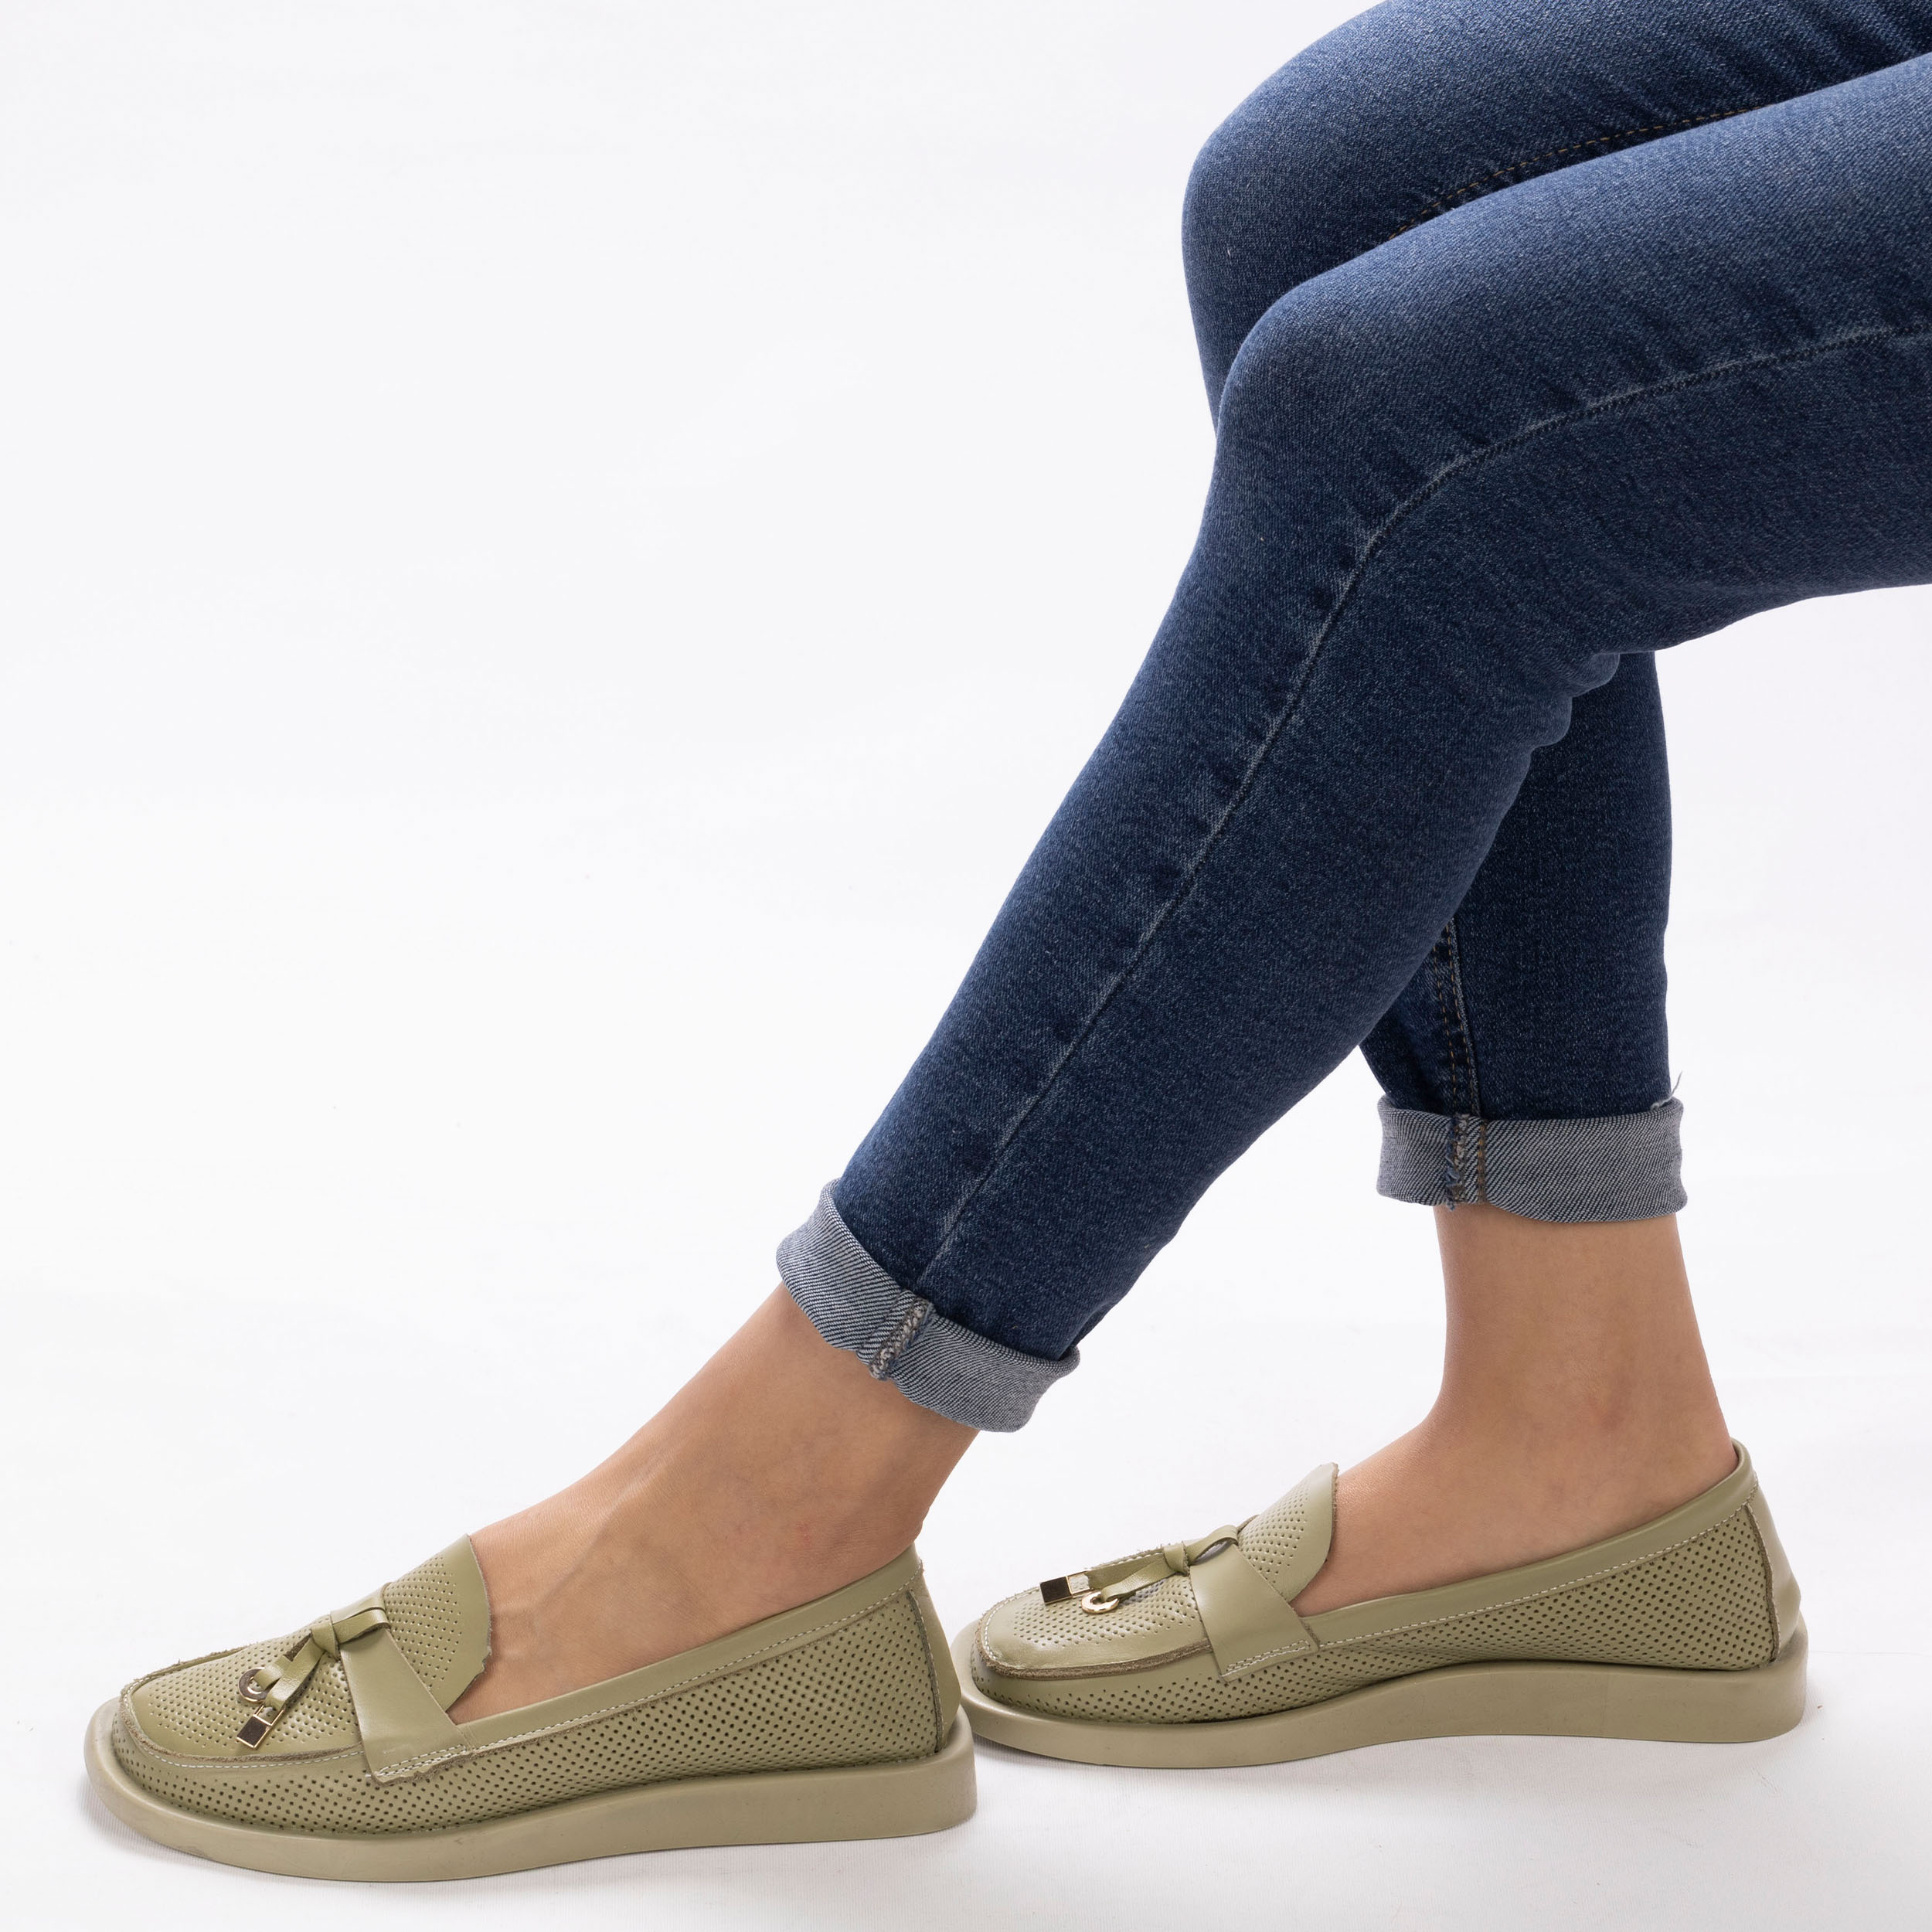 Kadın Hakiki Yumuşak Deri Yeşil Günlük Loafer Babet Ayakkabı, Renk: Yeşil, Beden: 36